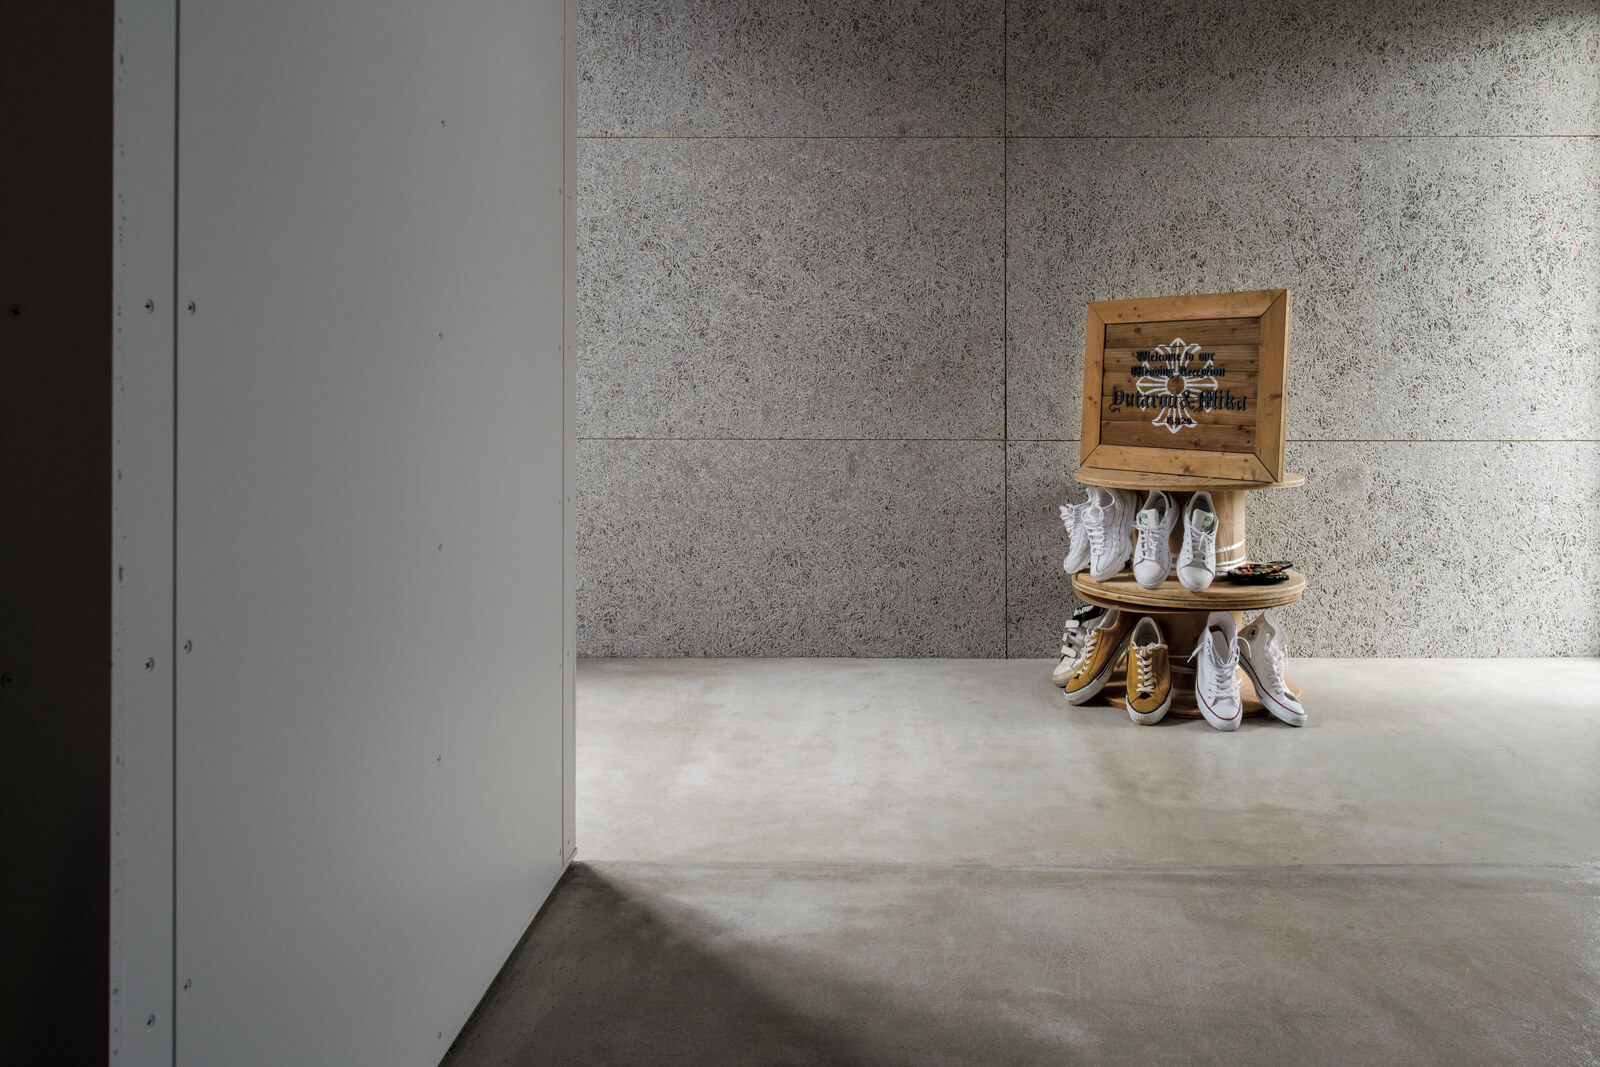 モルタルと木毛板からなるシンプルなエントランス。コレクションのスニーカーが出迎えてくれる